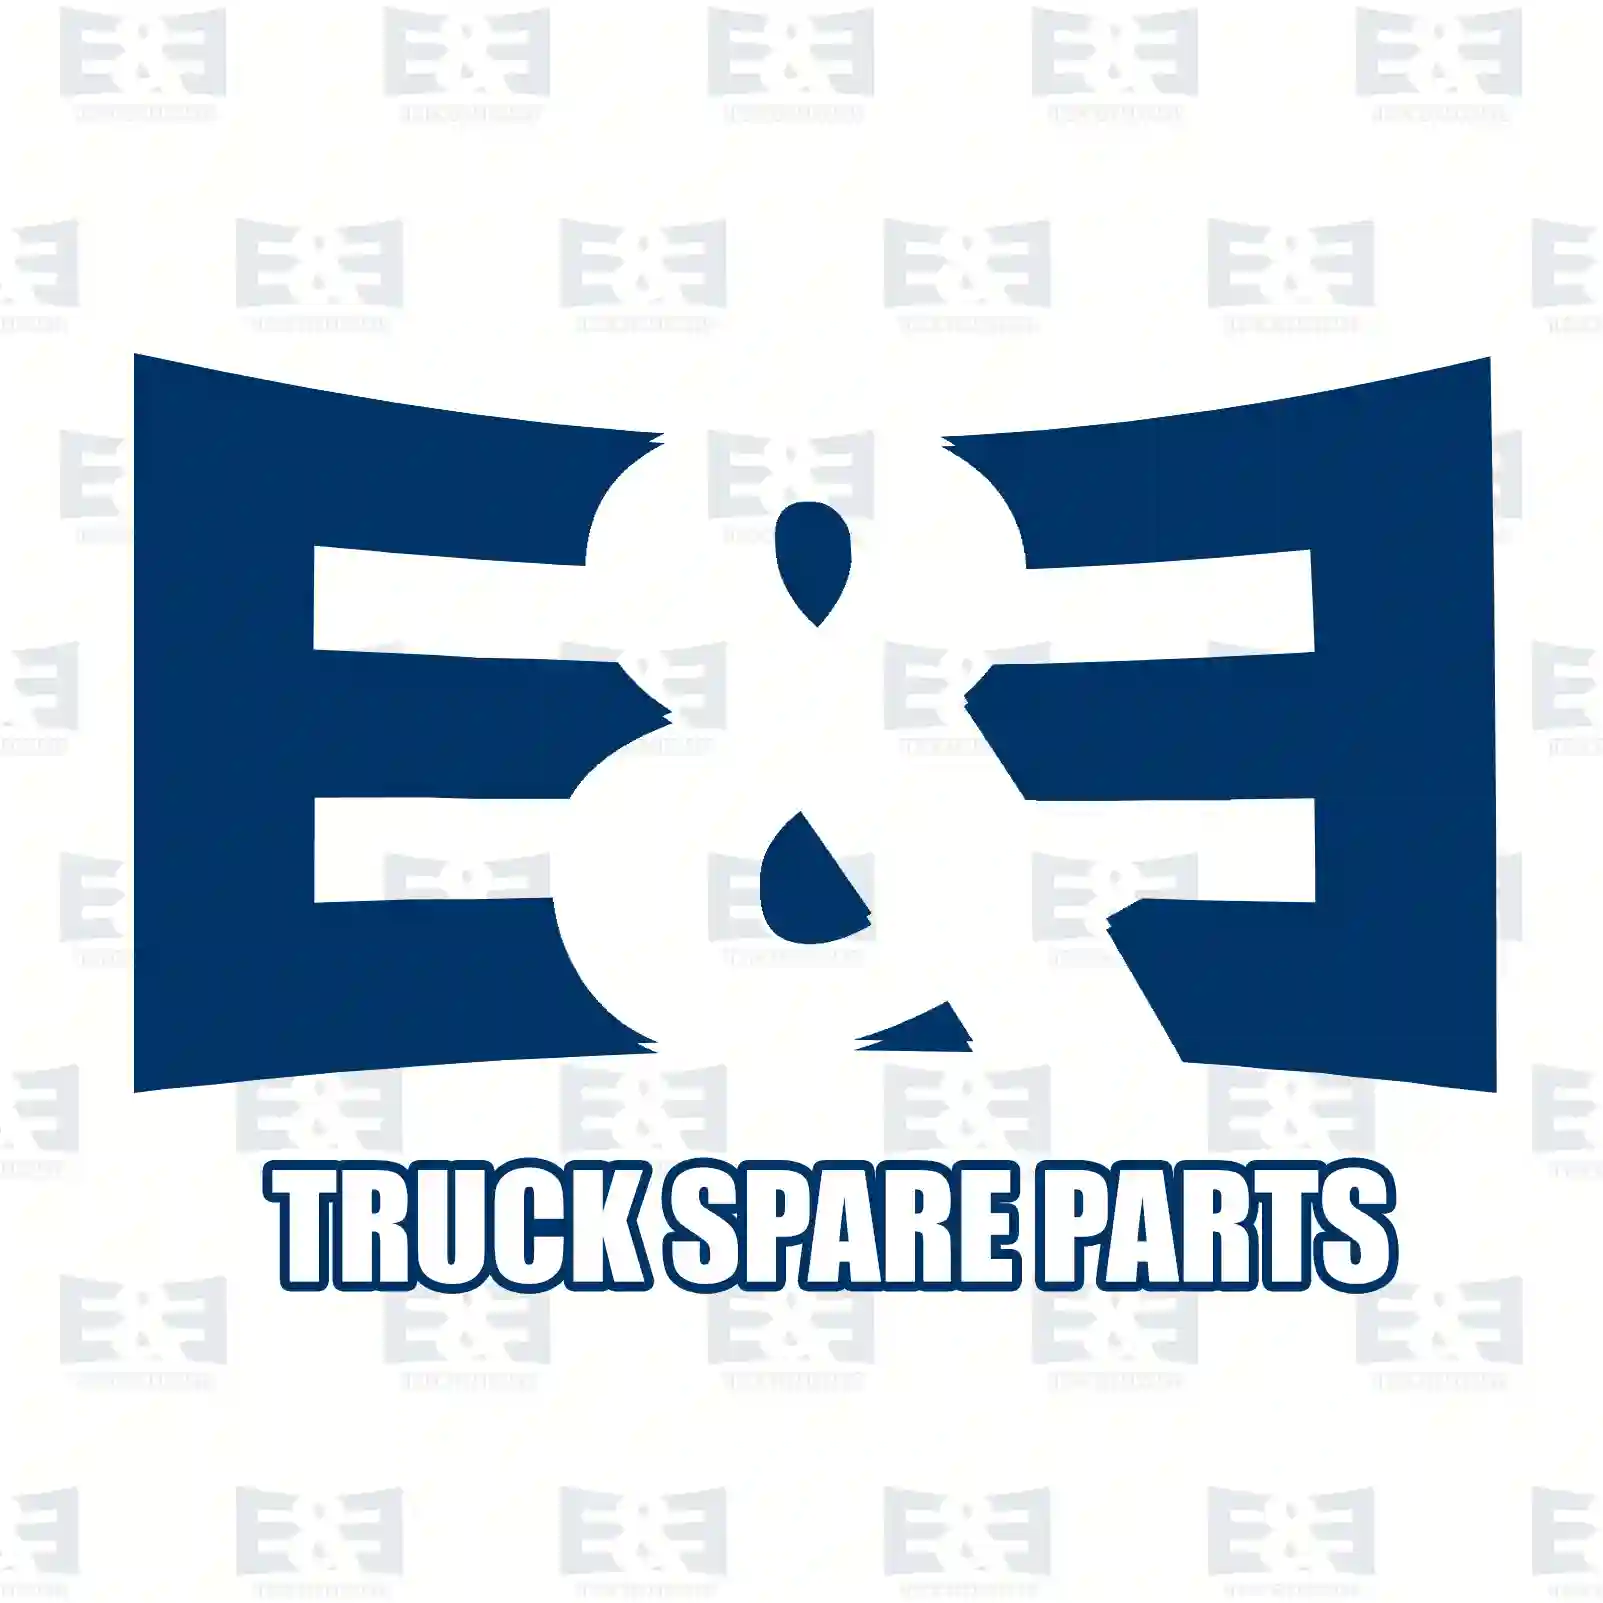 Pull rod, door lock, 2E2292062, 1306950, 2230704, ZG61048-0008 ||  2E2292062 E&E Truck Spare Parts | Truck Spare Parts, Auotomotive Spare Parts Pull rod, door lock, 2E2292062, 1306950, 2230704, ZG61048-0008 ||  2E2292062 E&E Truck Spare Parts | Truck Spare Parts, Auotomotive Spare Parts